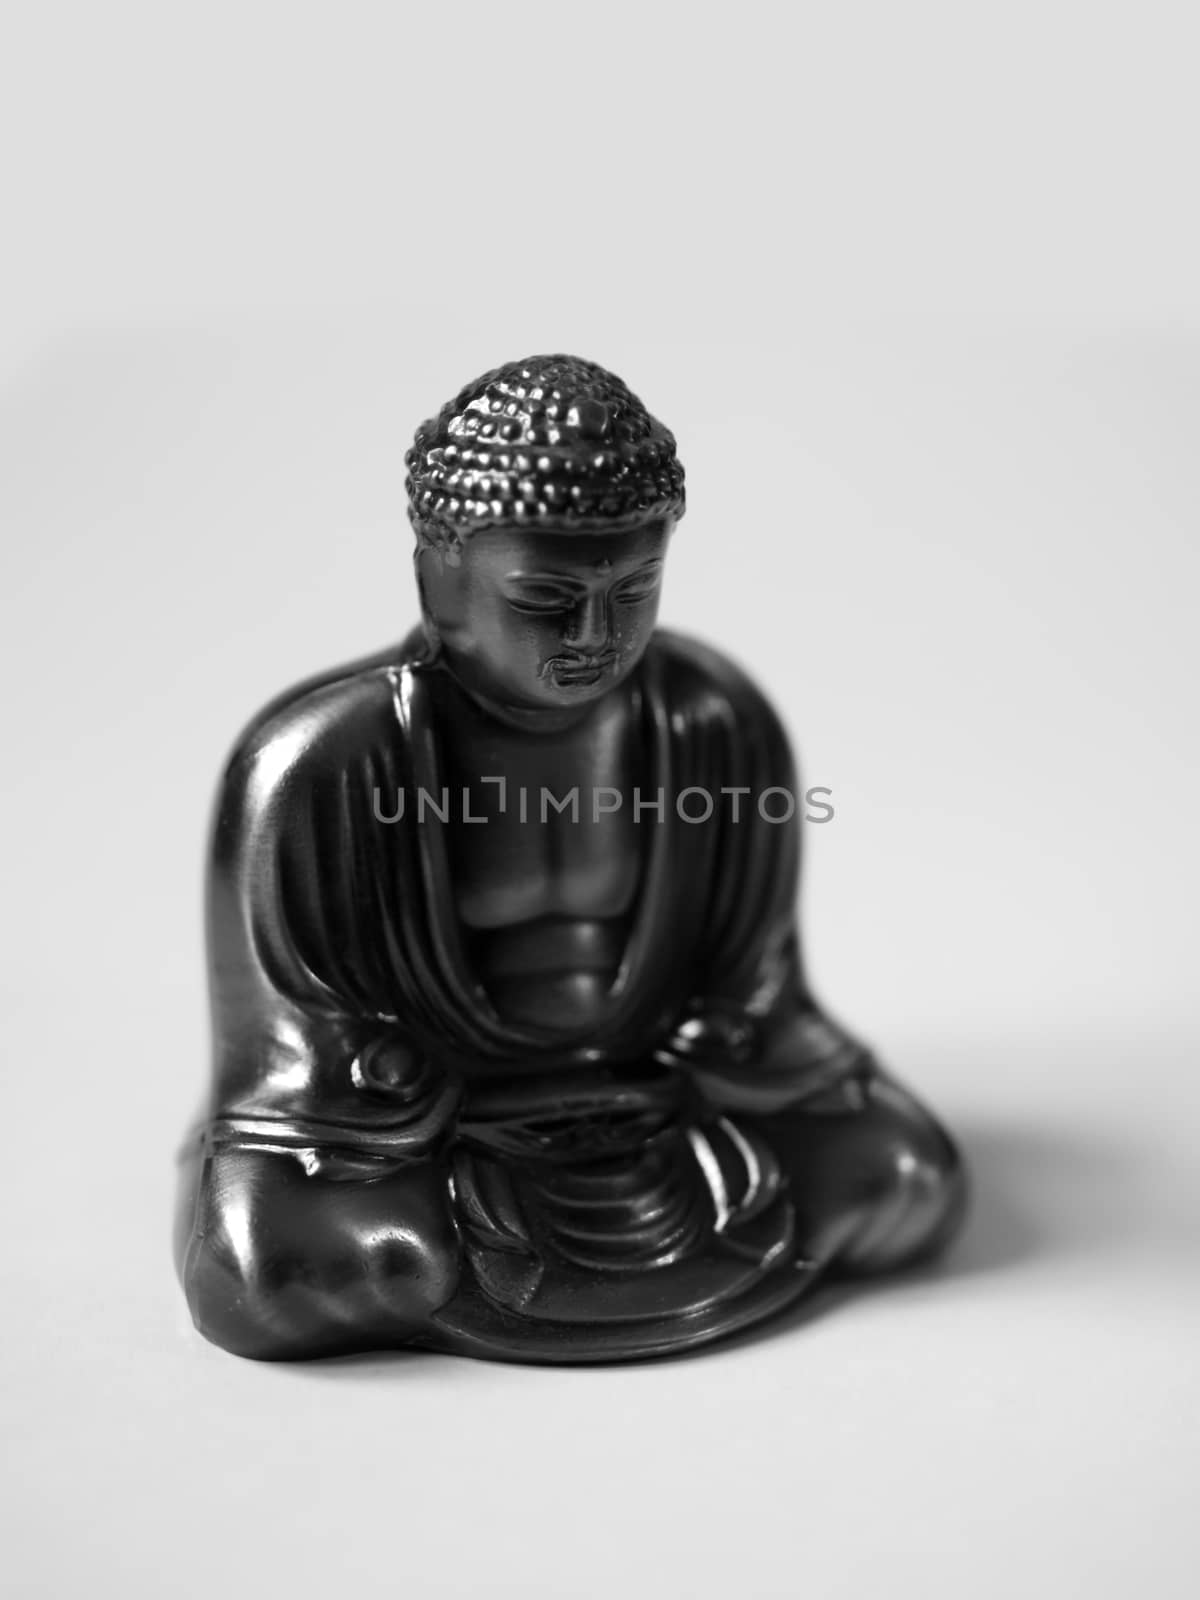 BLACK & WHITE PHOTO OF THE GREAT BUDDHA OF KAMAKURA